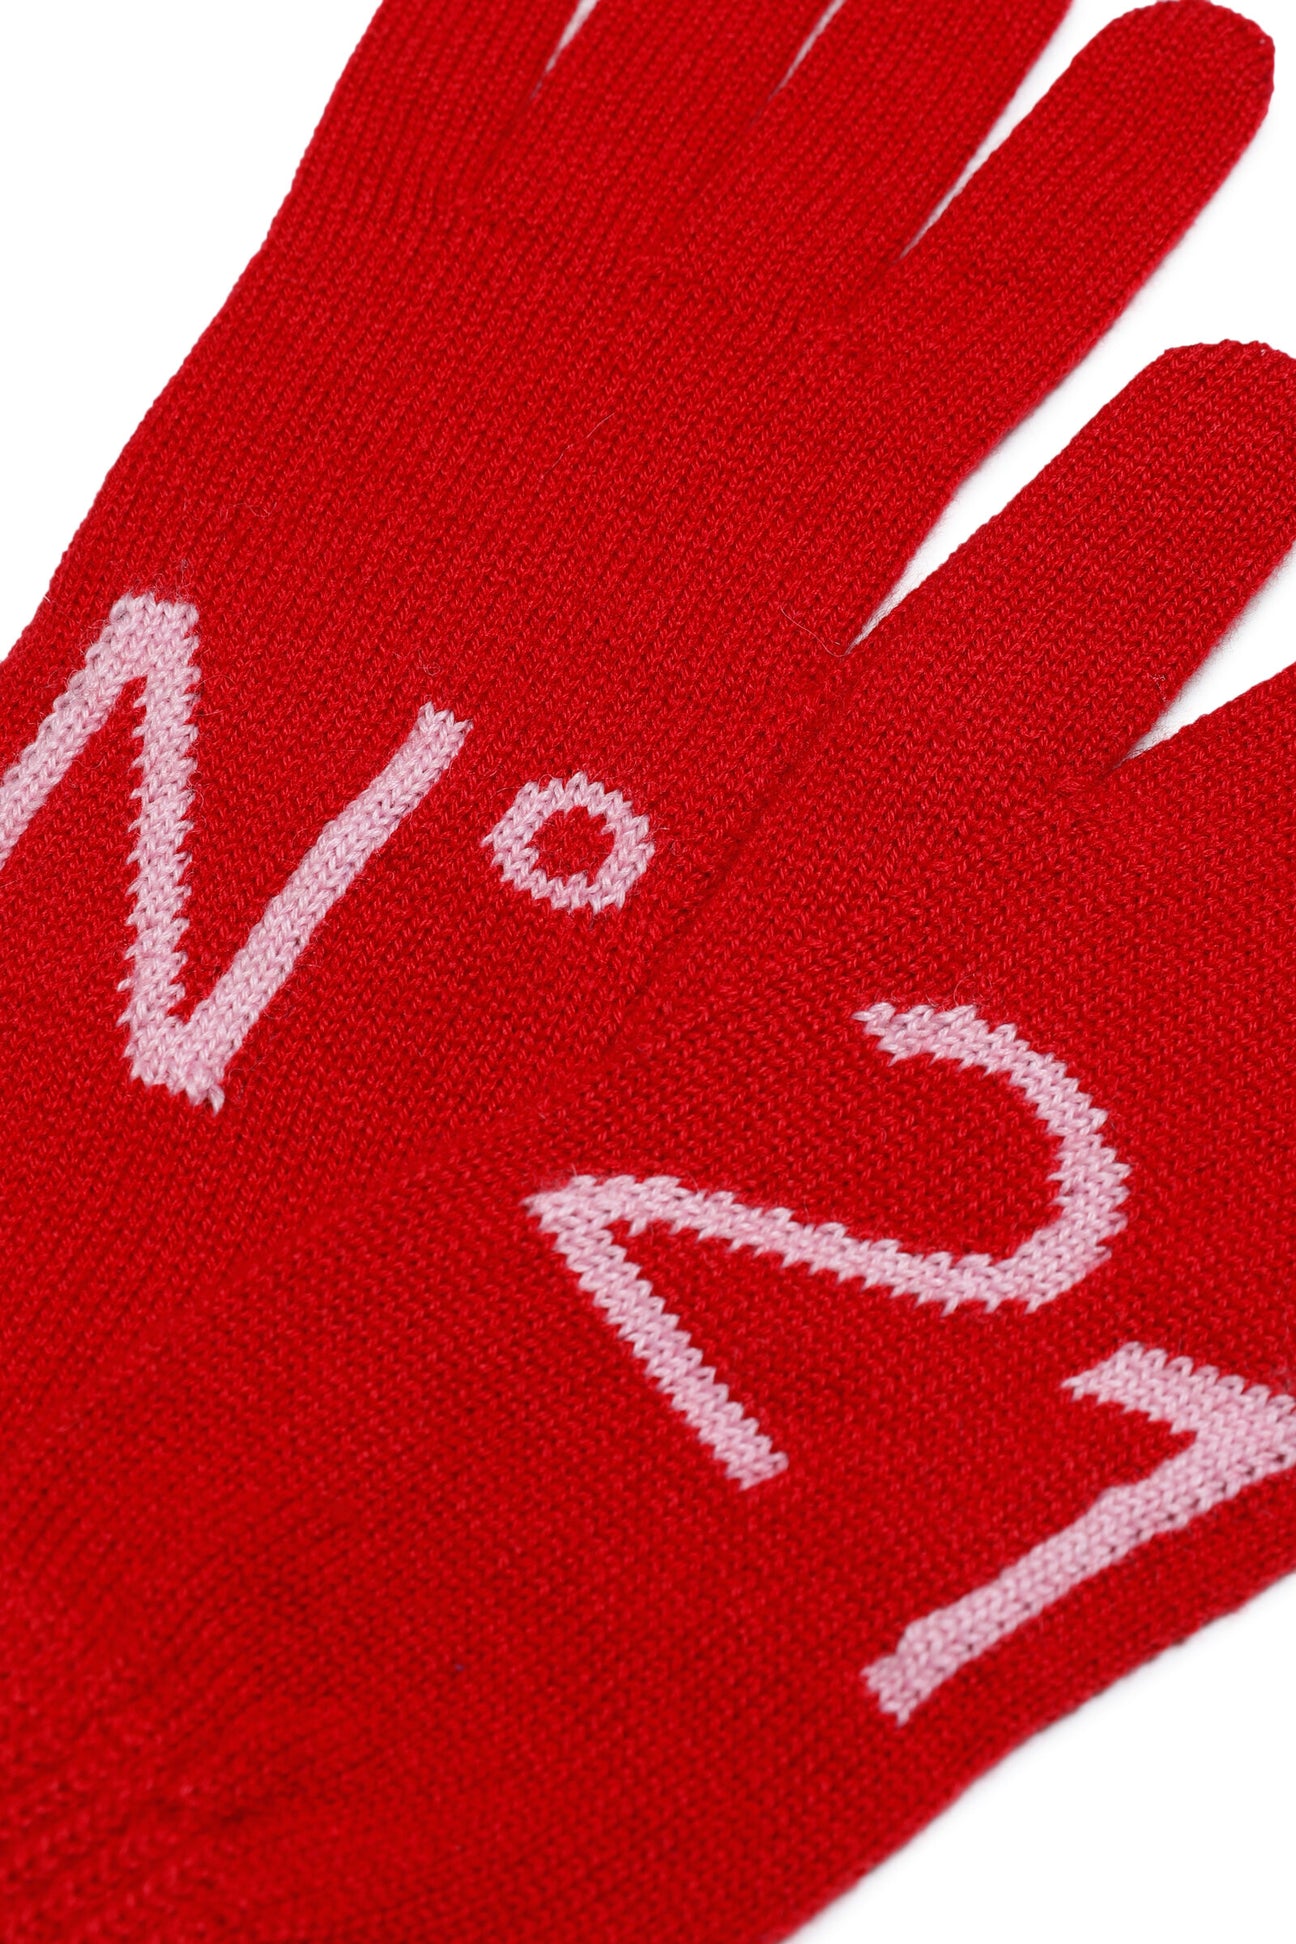 Knit gloves with logo Knit gloves with logo